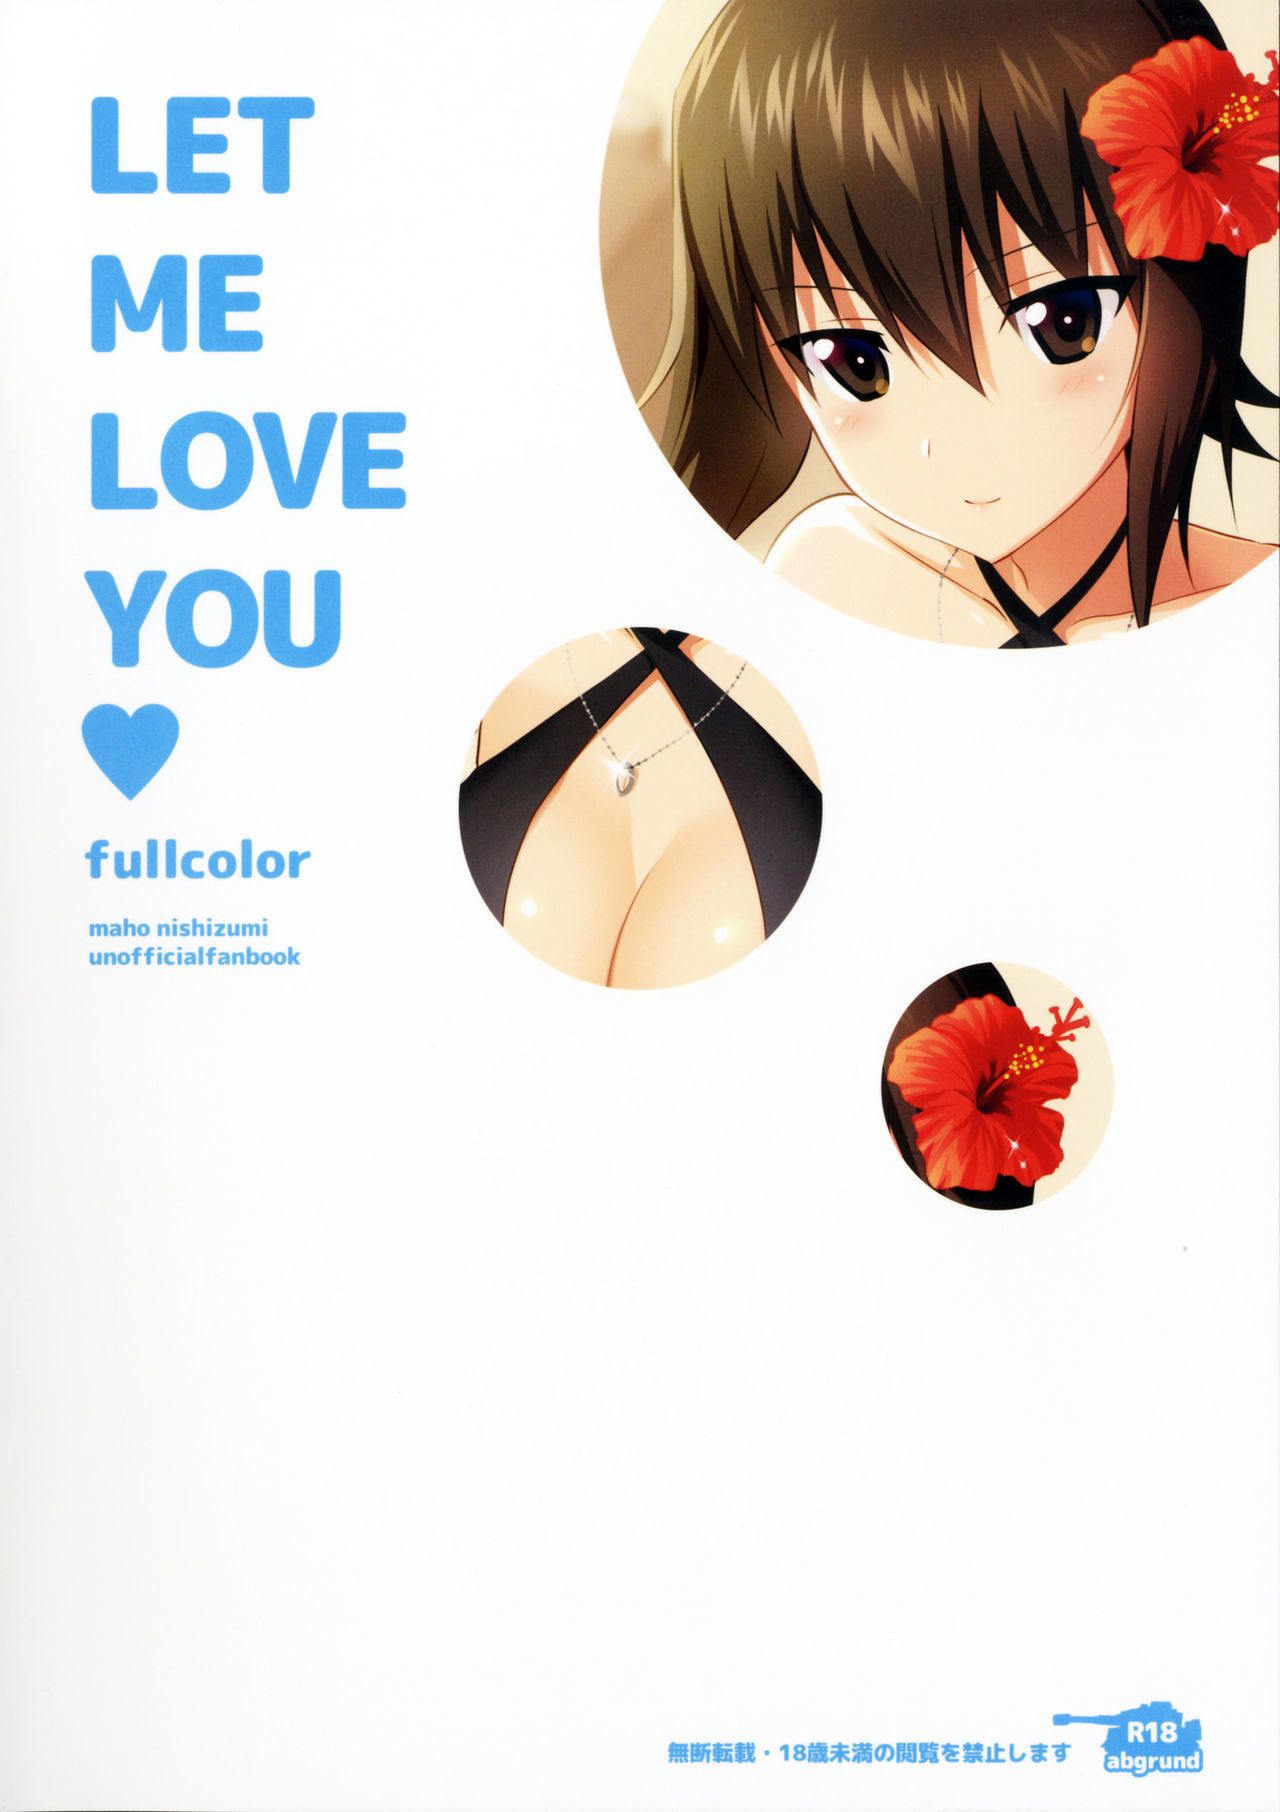 (C90) abgrund (Saikawa Yusa) LET ME LOVE YOU fullcolor (Girls und Panzer)